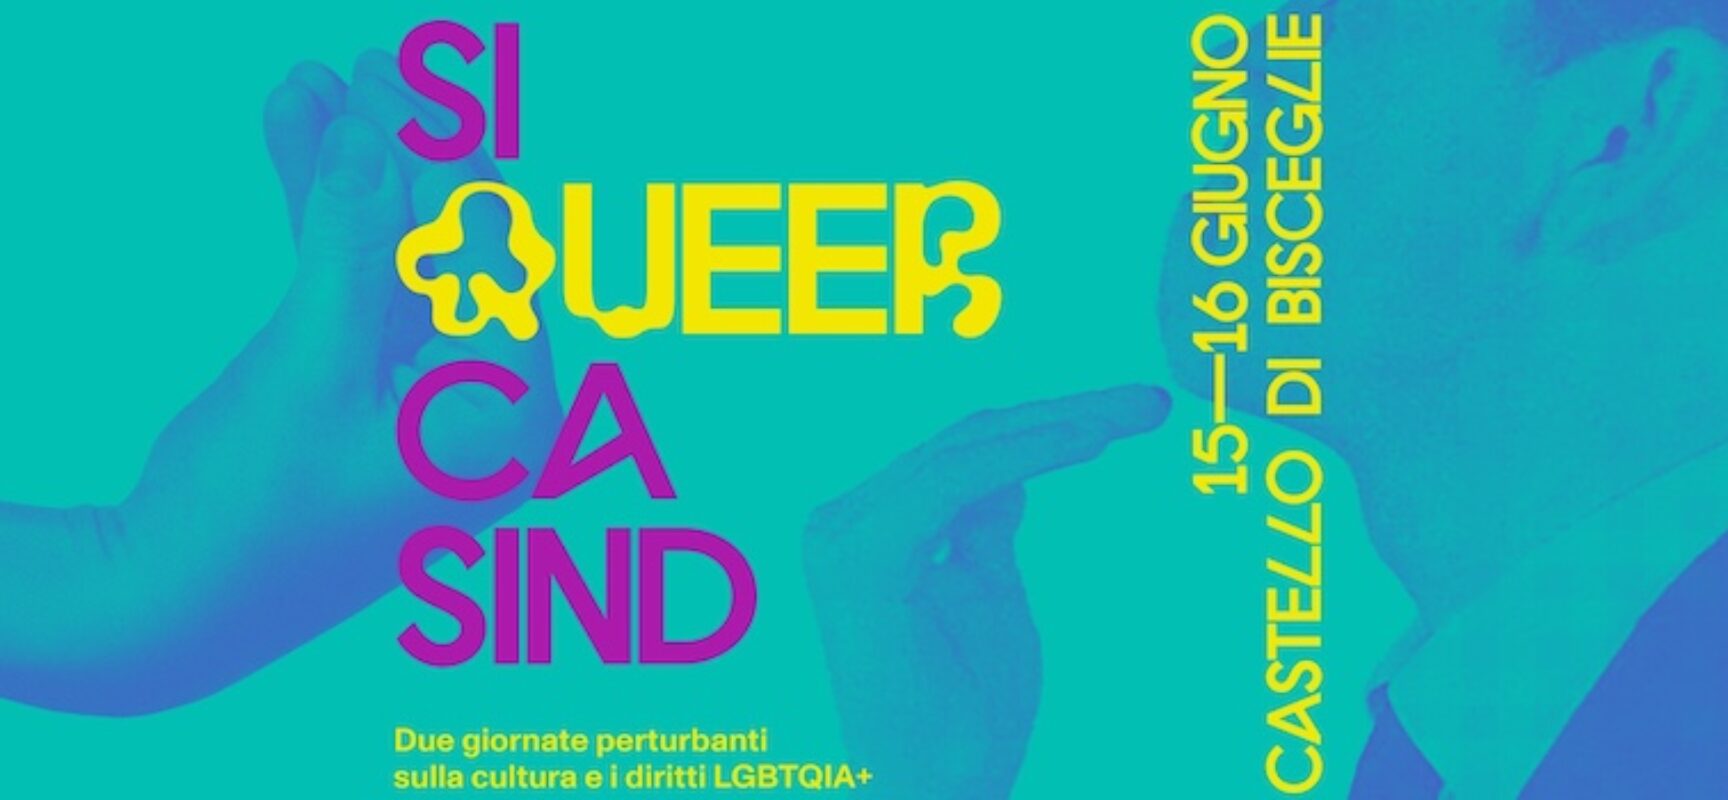 “Si Queer Ca Sind”: due giorni dedicati alla cultura LGBTQIA+ al Castello di Bisceglie